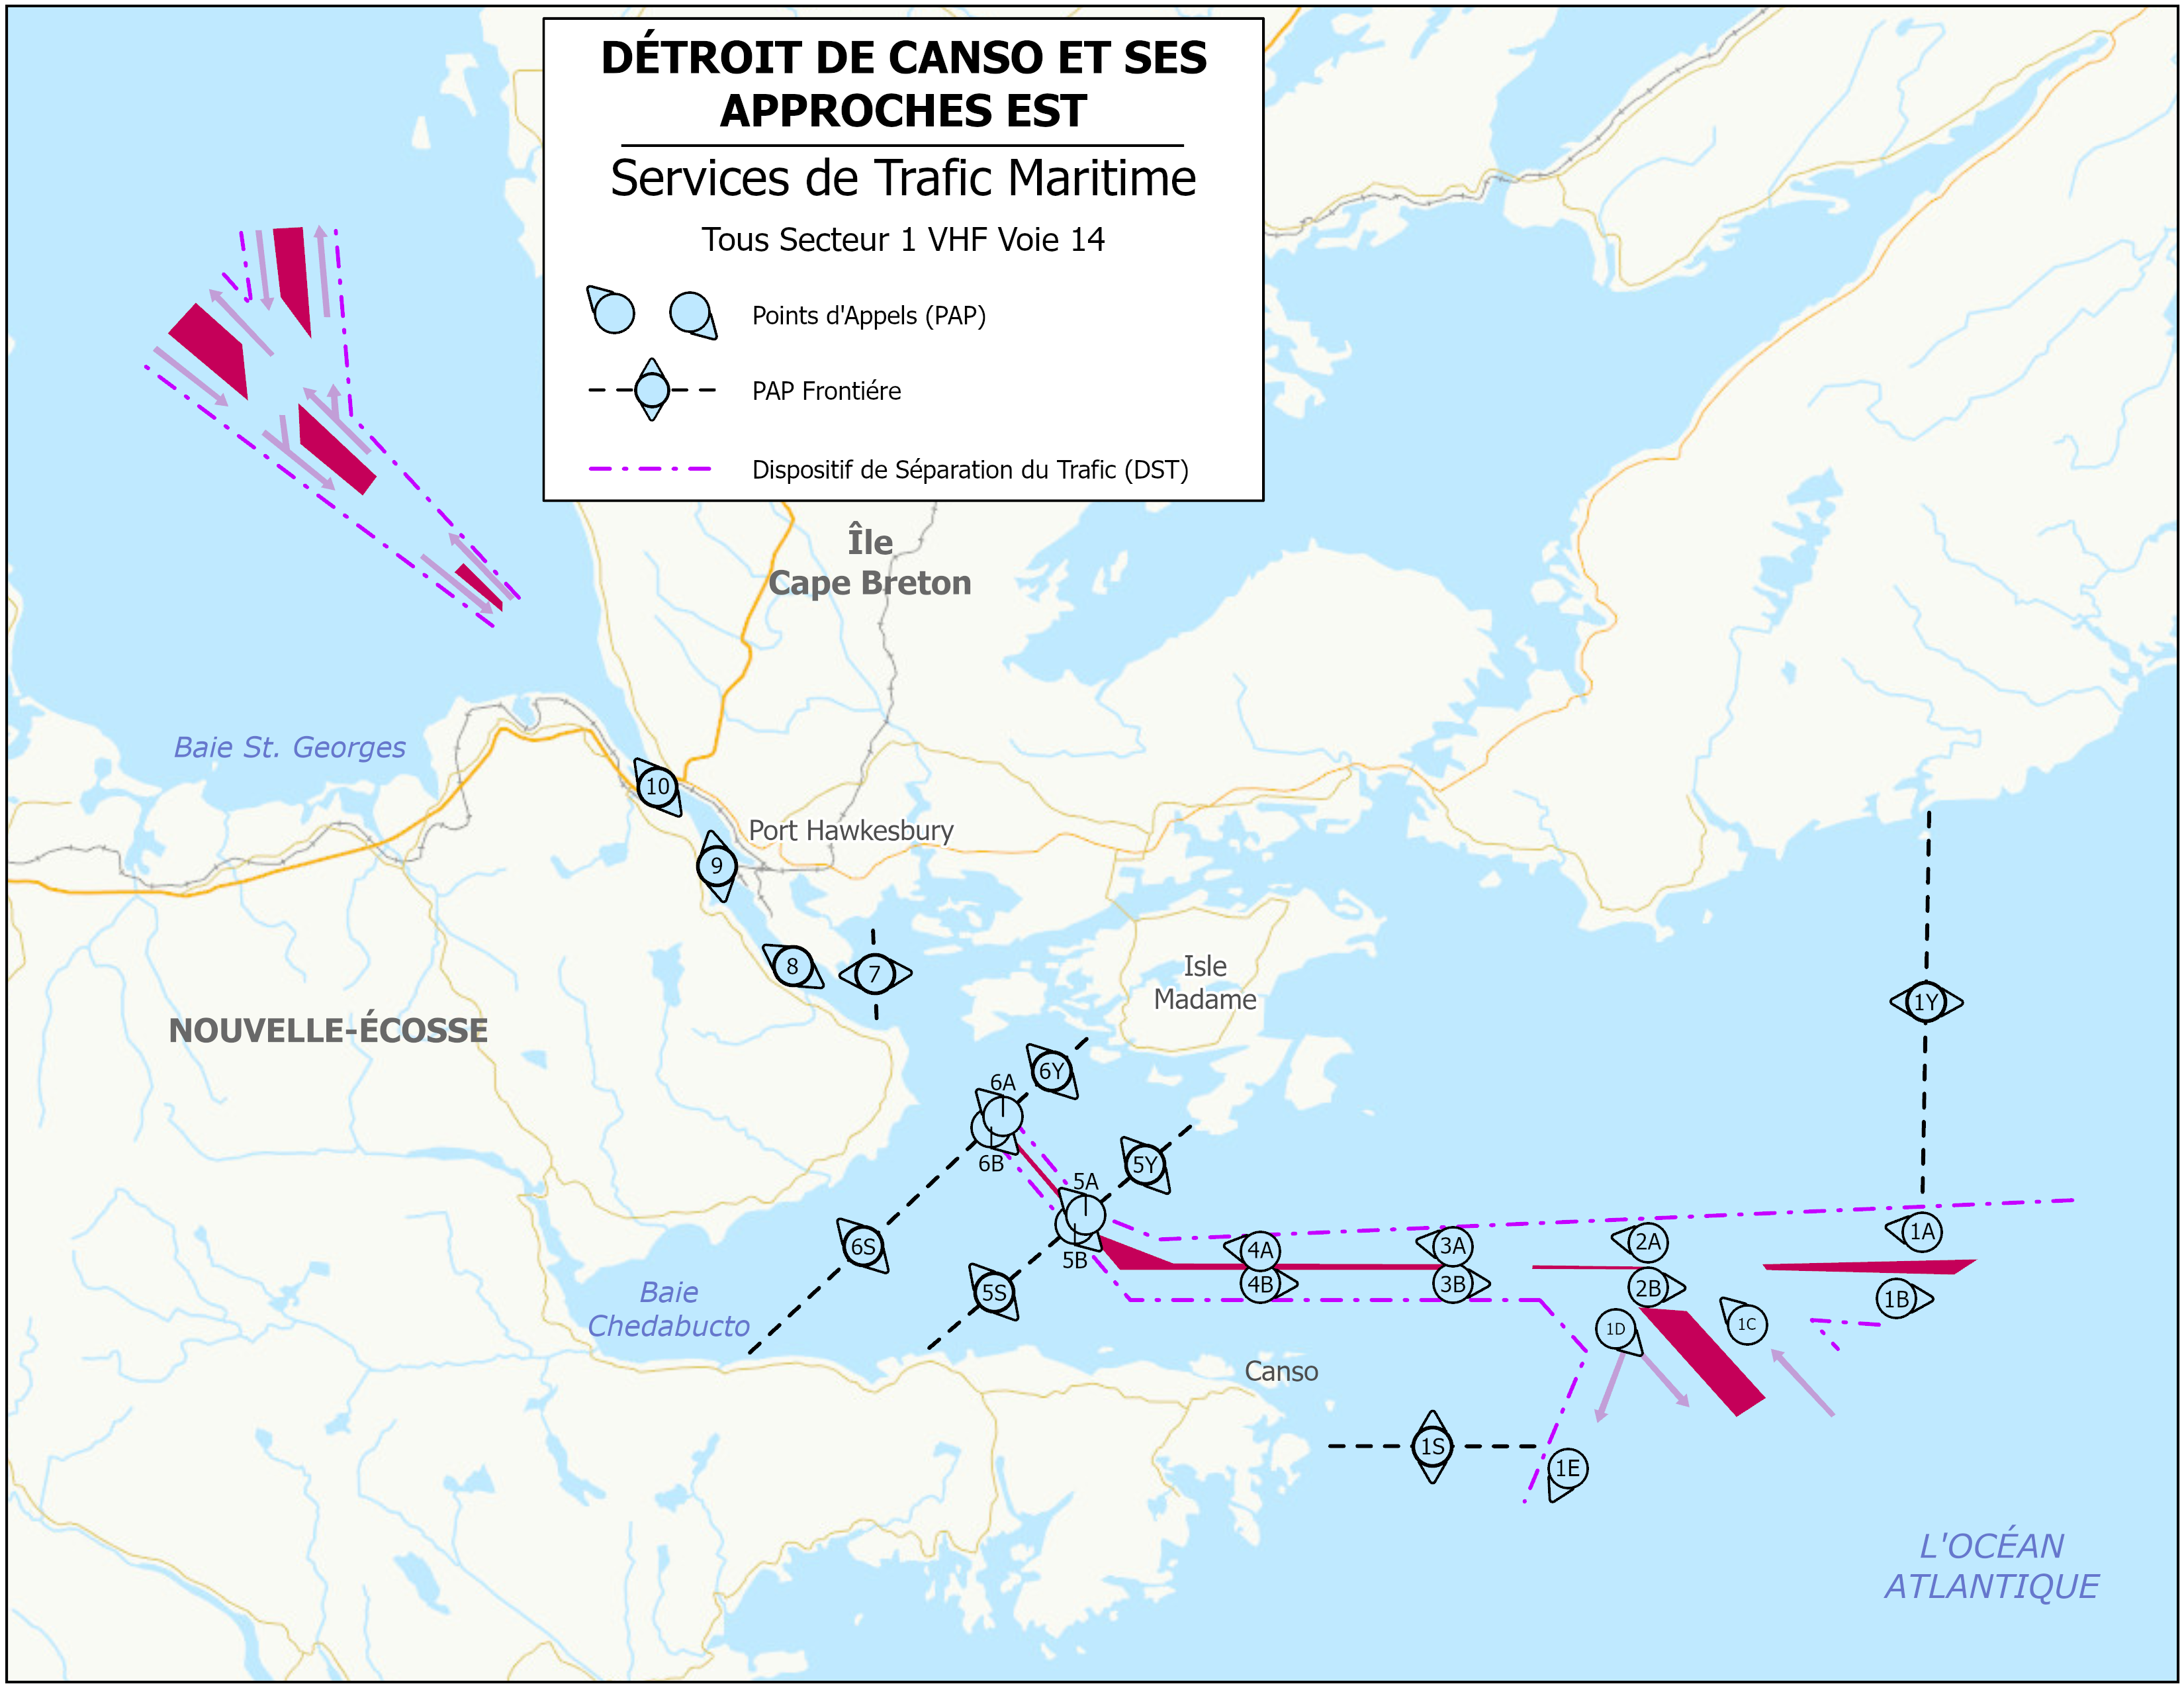 Zone de services de trafic maritime détroit de Canson et ses approches Est